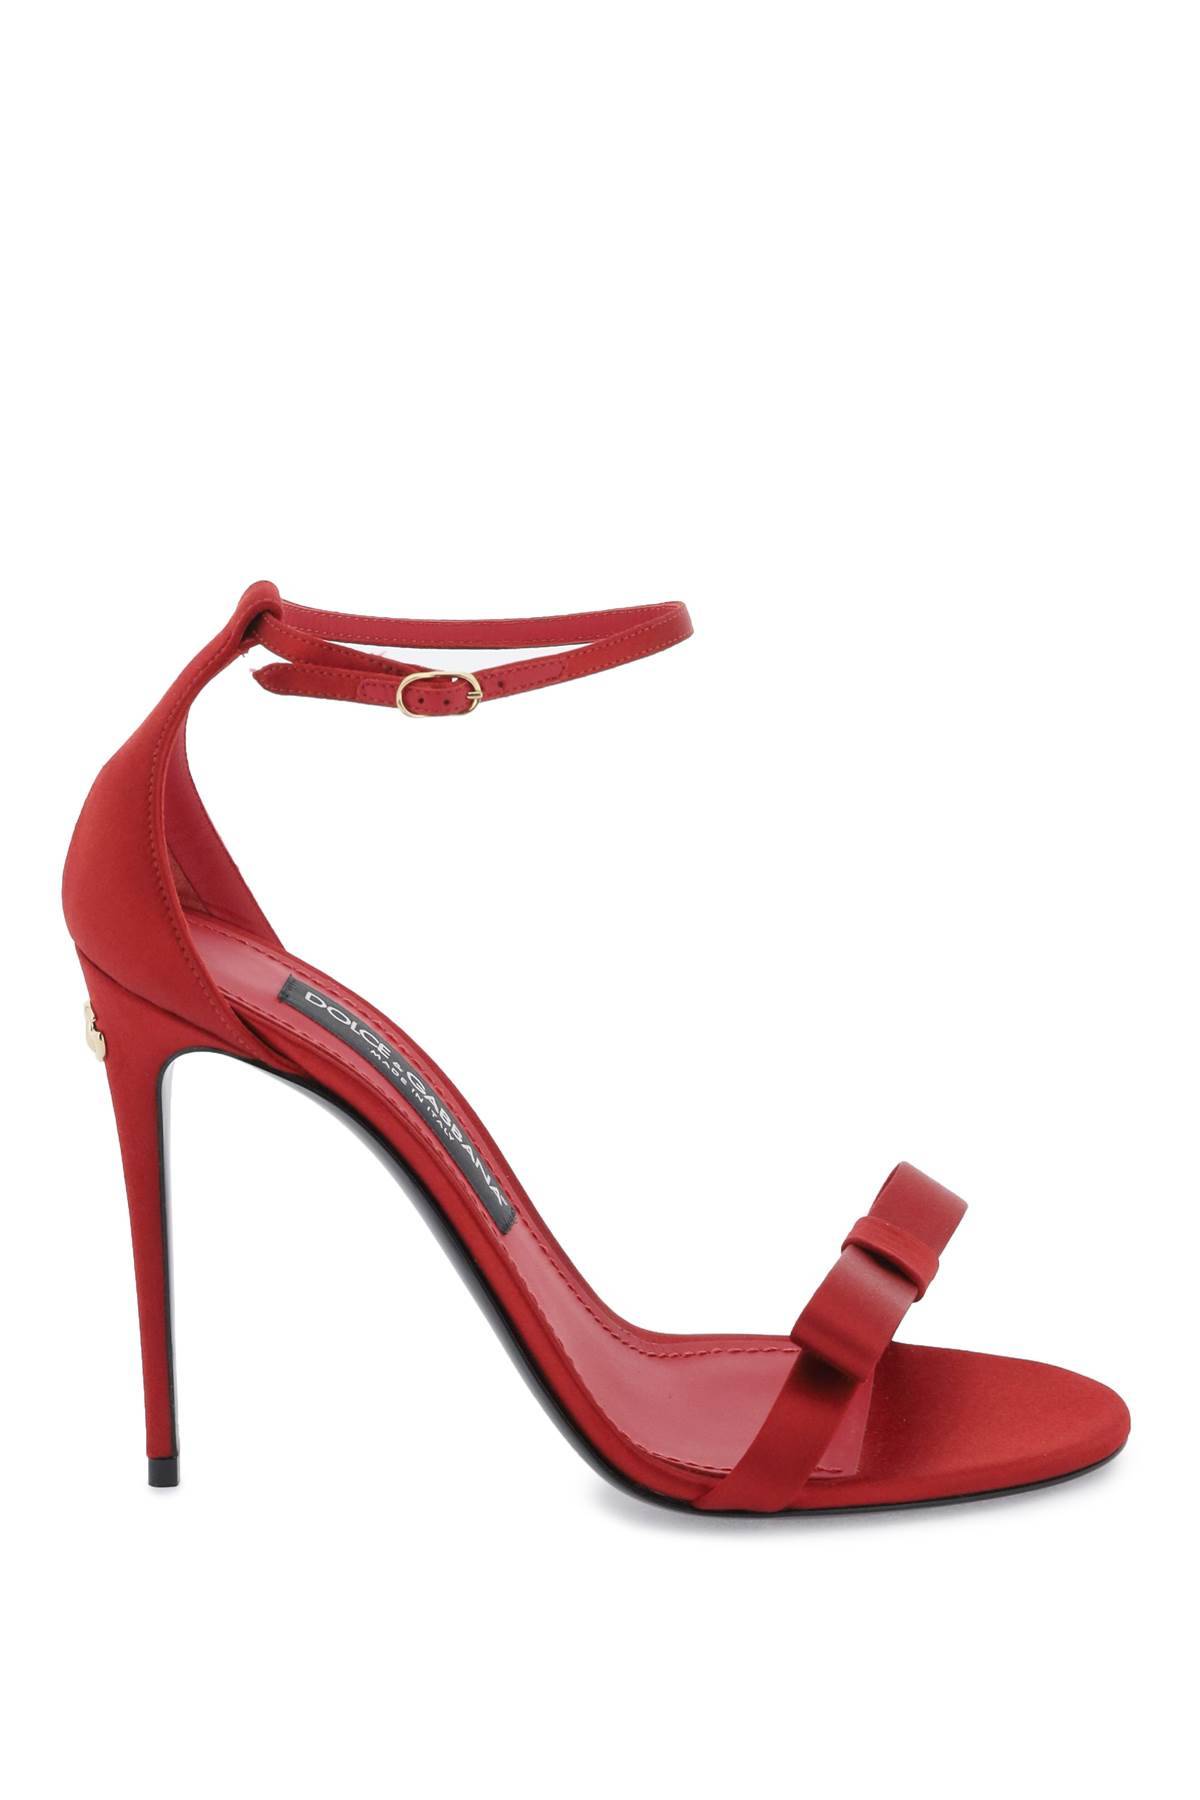 Dolce & Gabbana DOLCE & GABBANA satin sandals